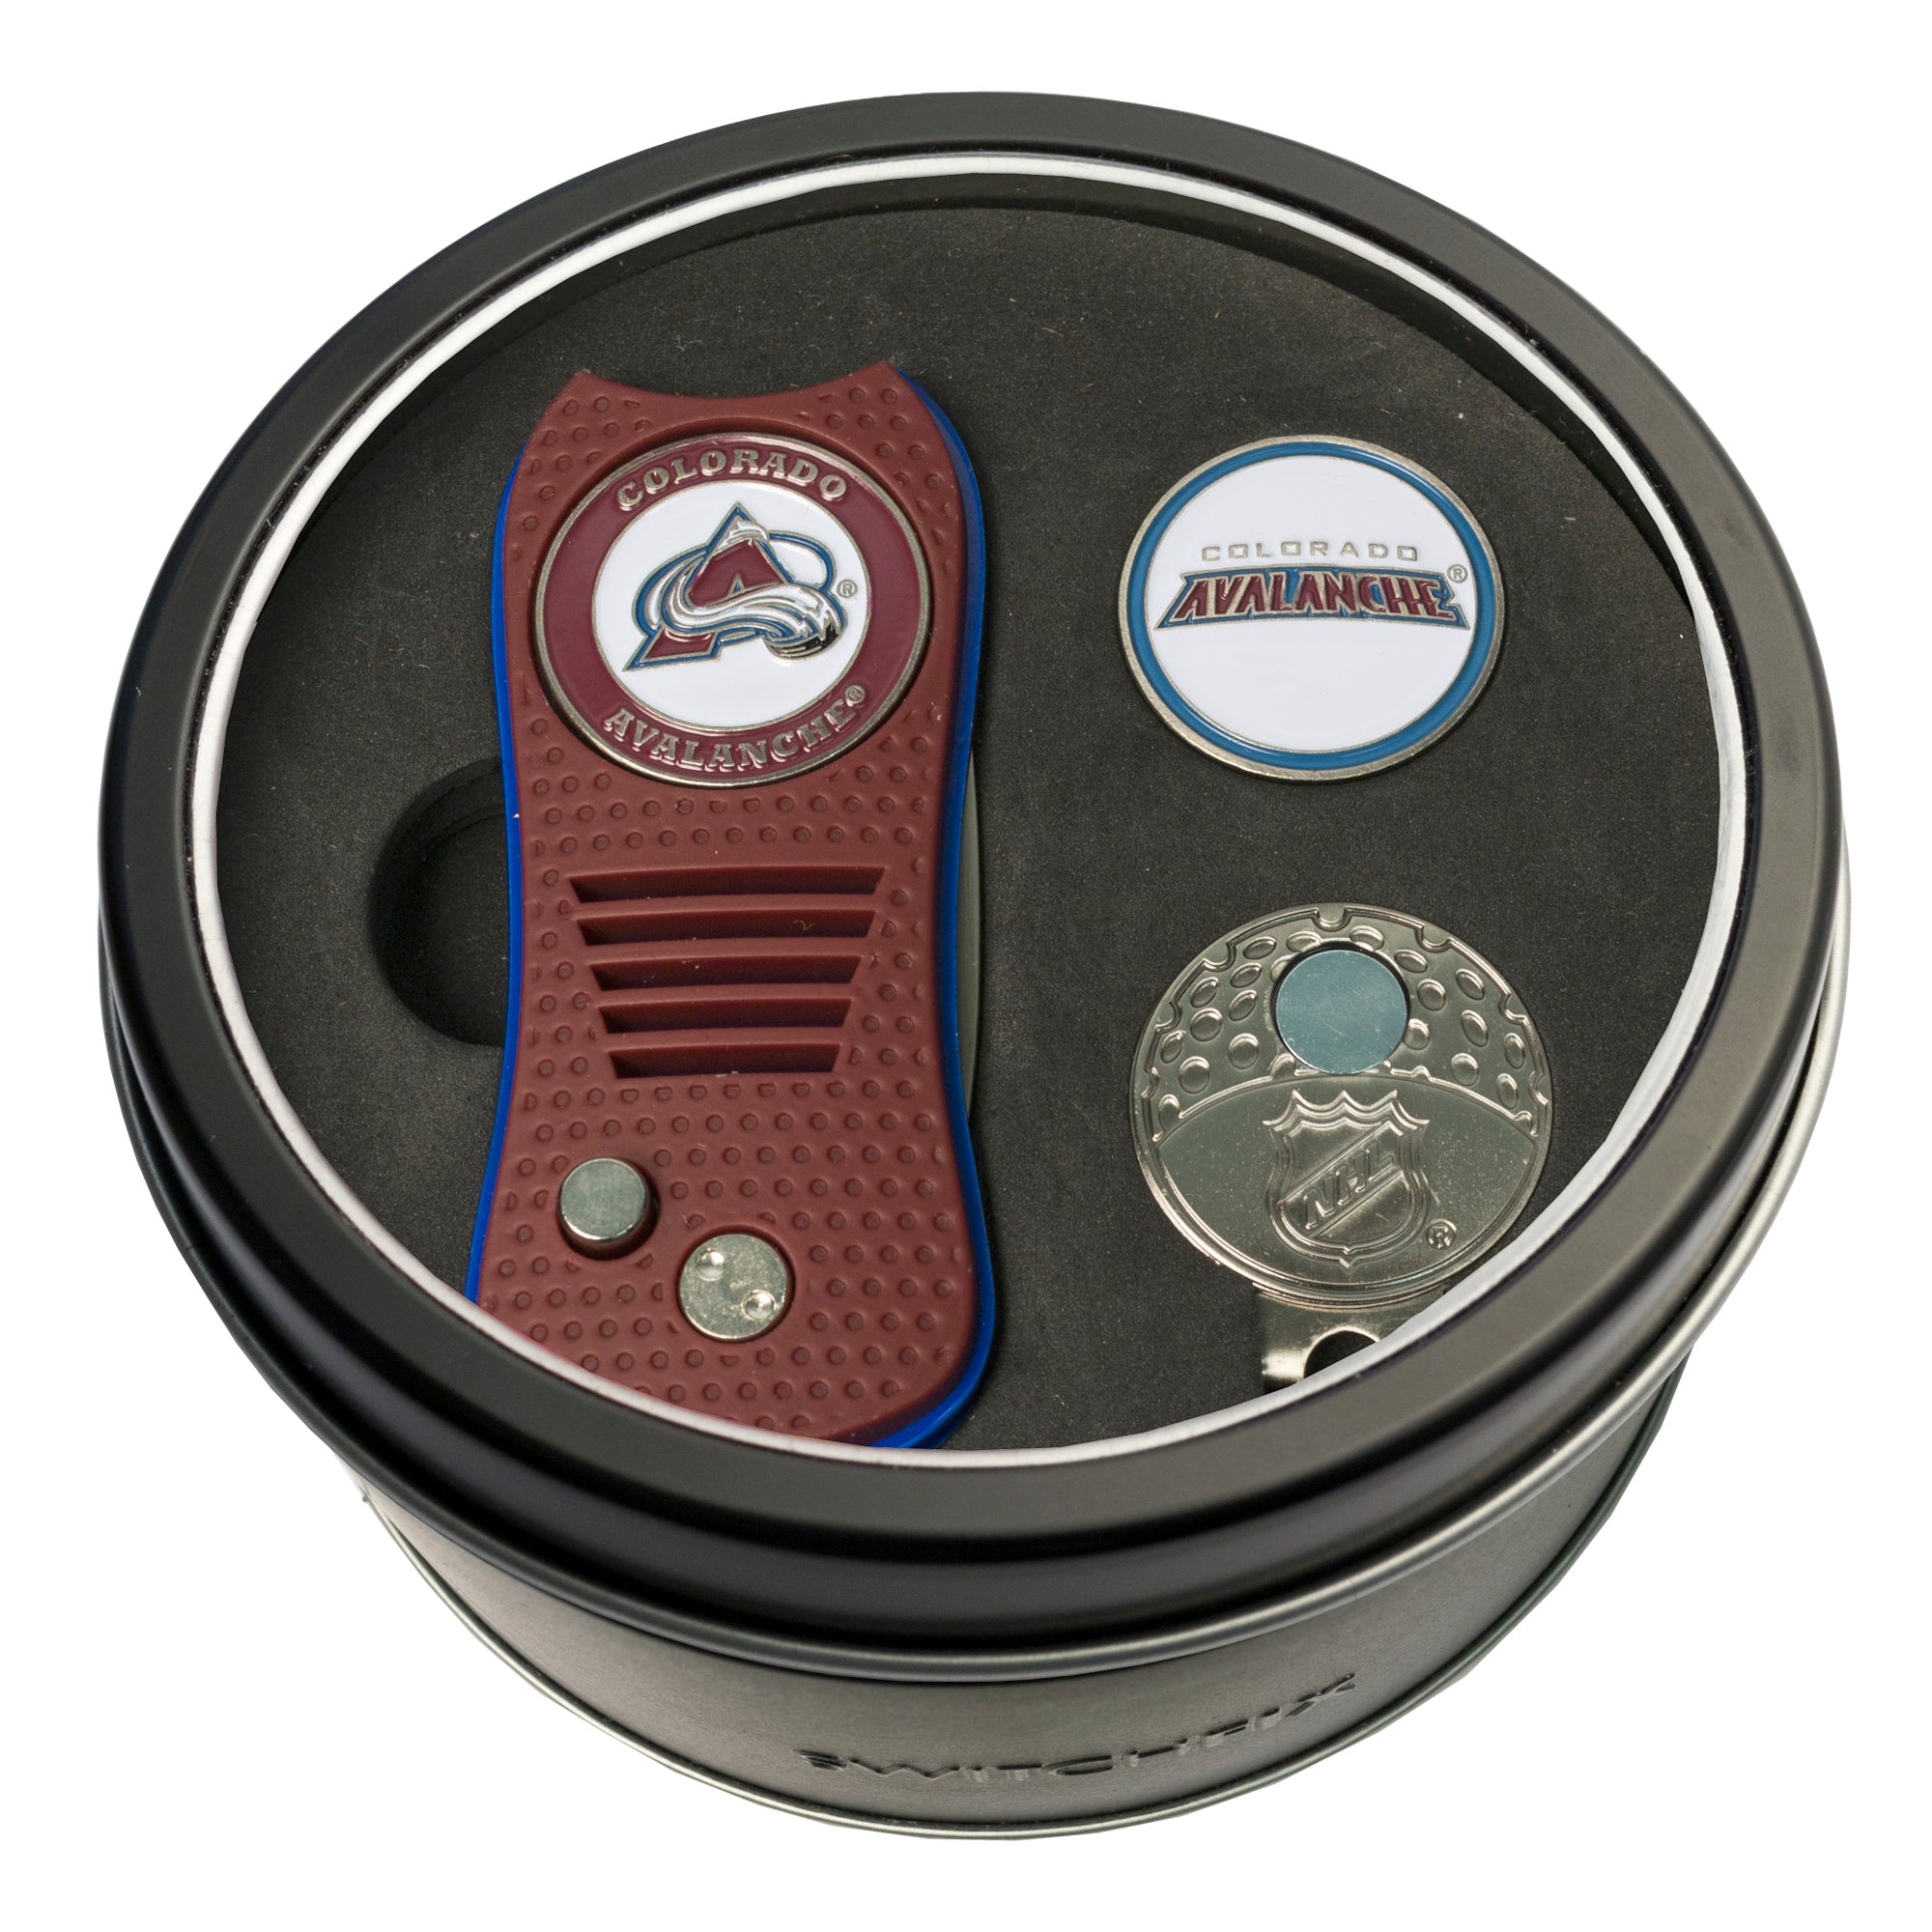 Colorado Avalanche Switchblade Divot Tool + Cap Clip + Ball Marker Tin Gift Set